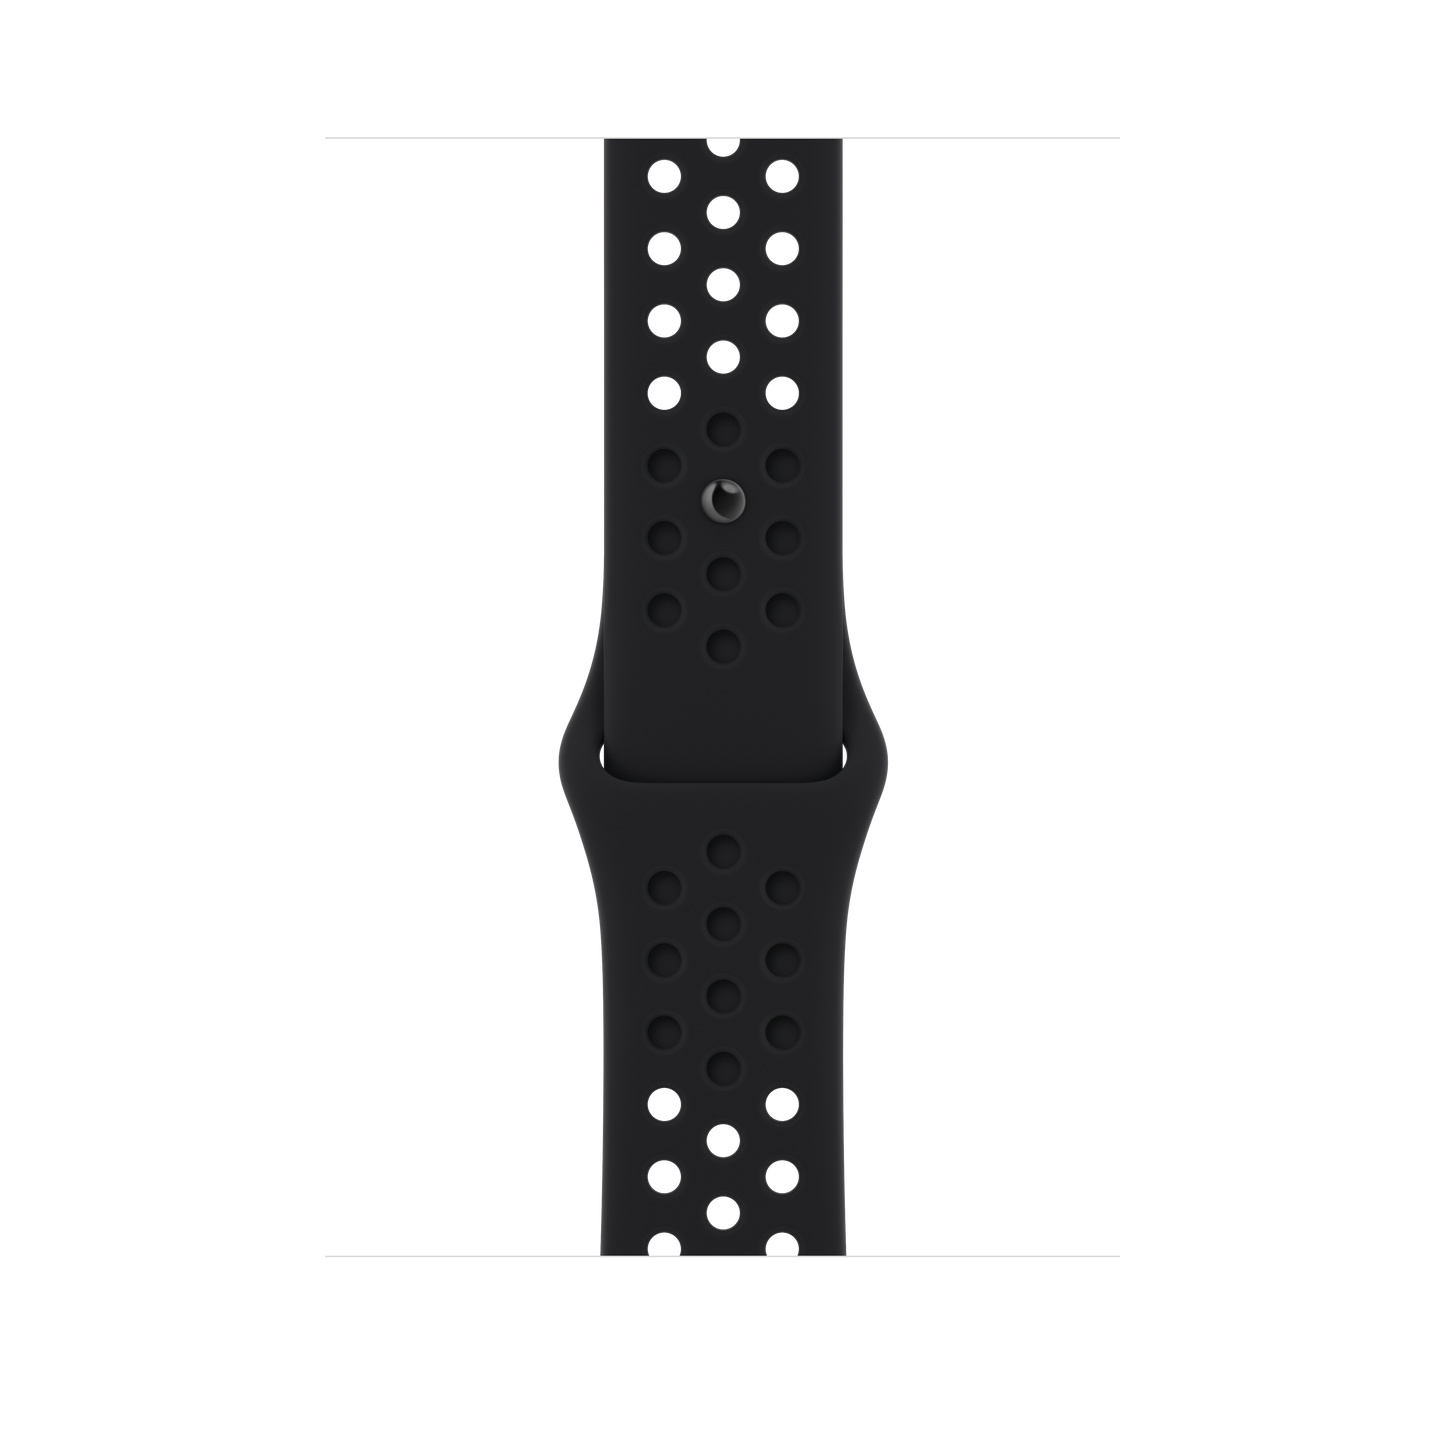 สาย Nike Sport Band Black/Blac สำหรับ Apple Watch 45 มม.